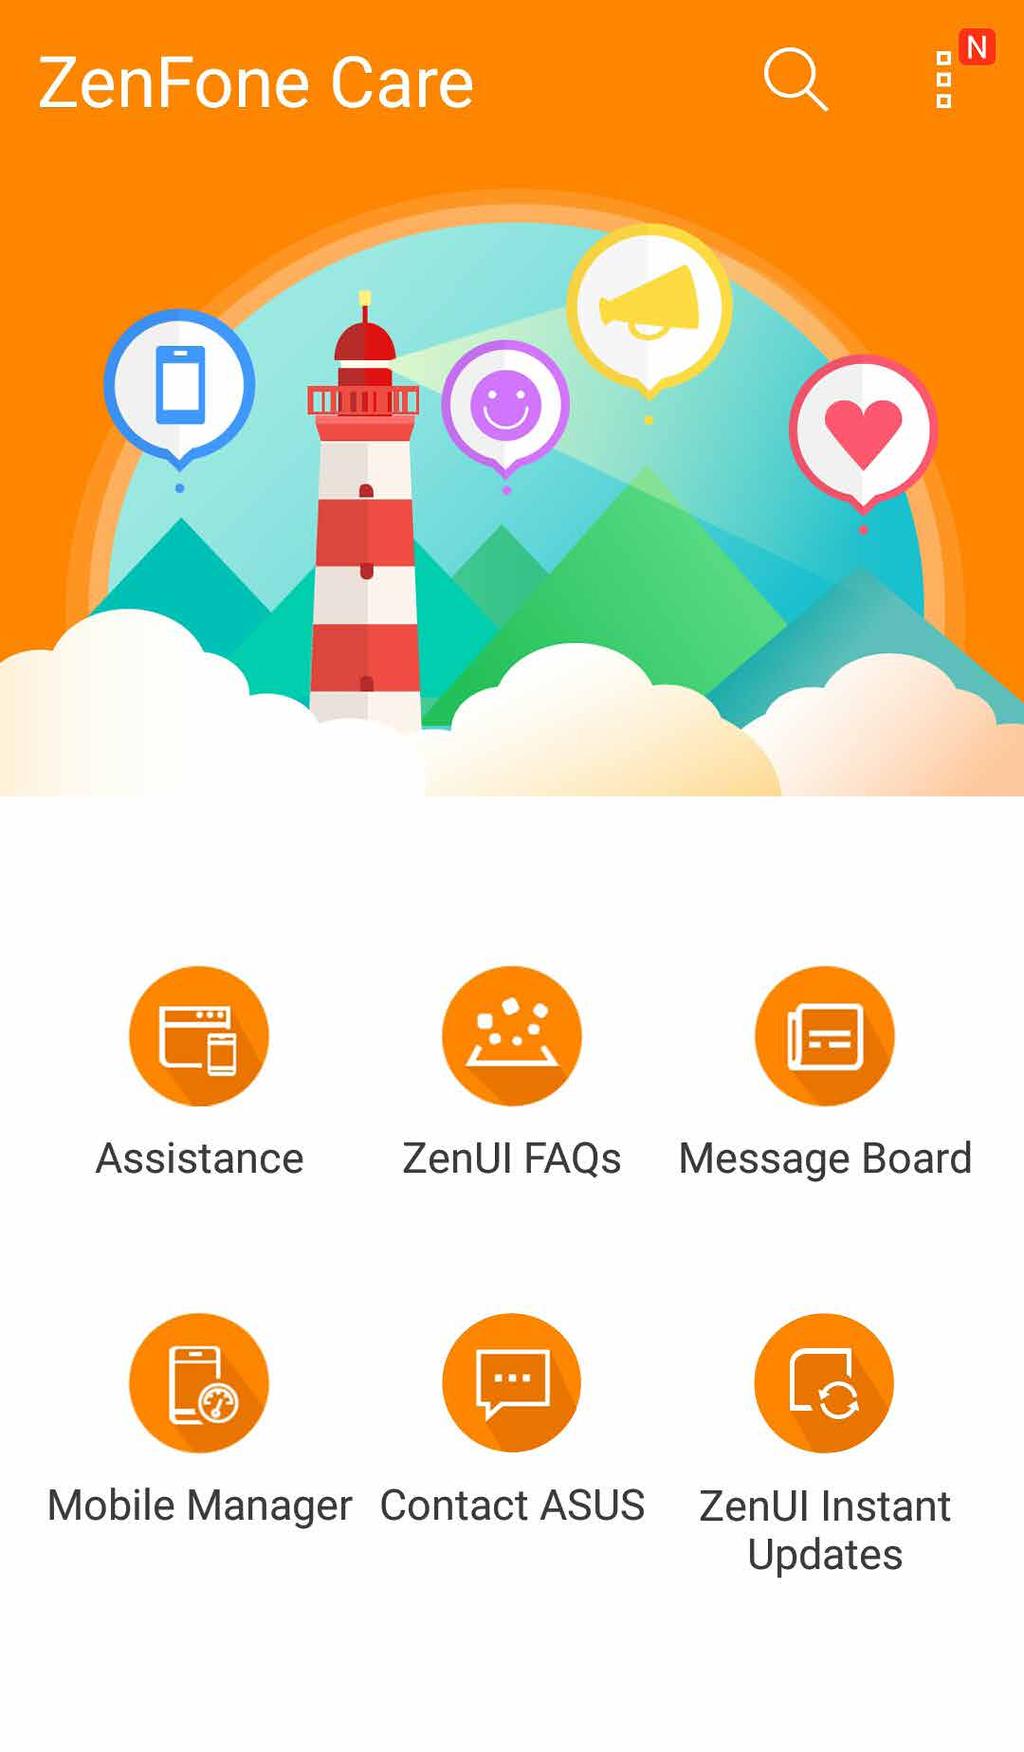 ZenFone Care Pozycja ta umożliwia wyszukiwanie odpowiedzi na często zadawane pytania (FAQ) lub kontaktowanie się bezpośrednio z innymi użytkownikami Zen UI w celu znajdowania i udostępniania